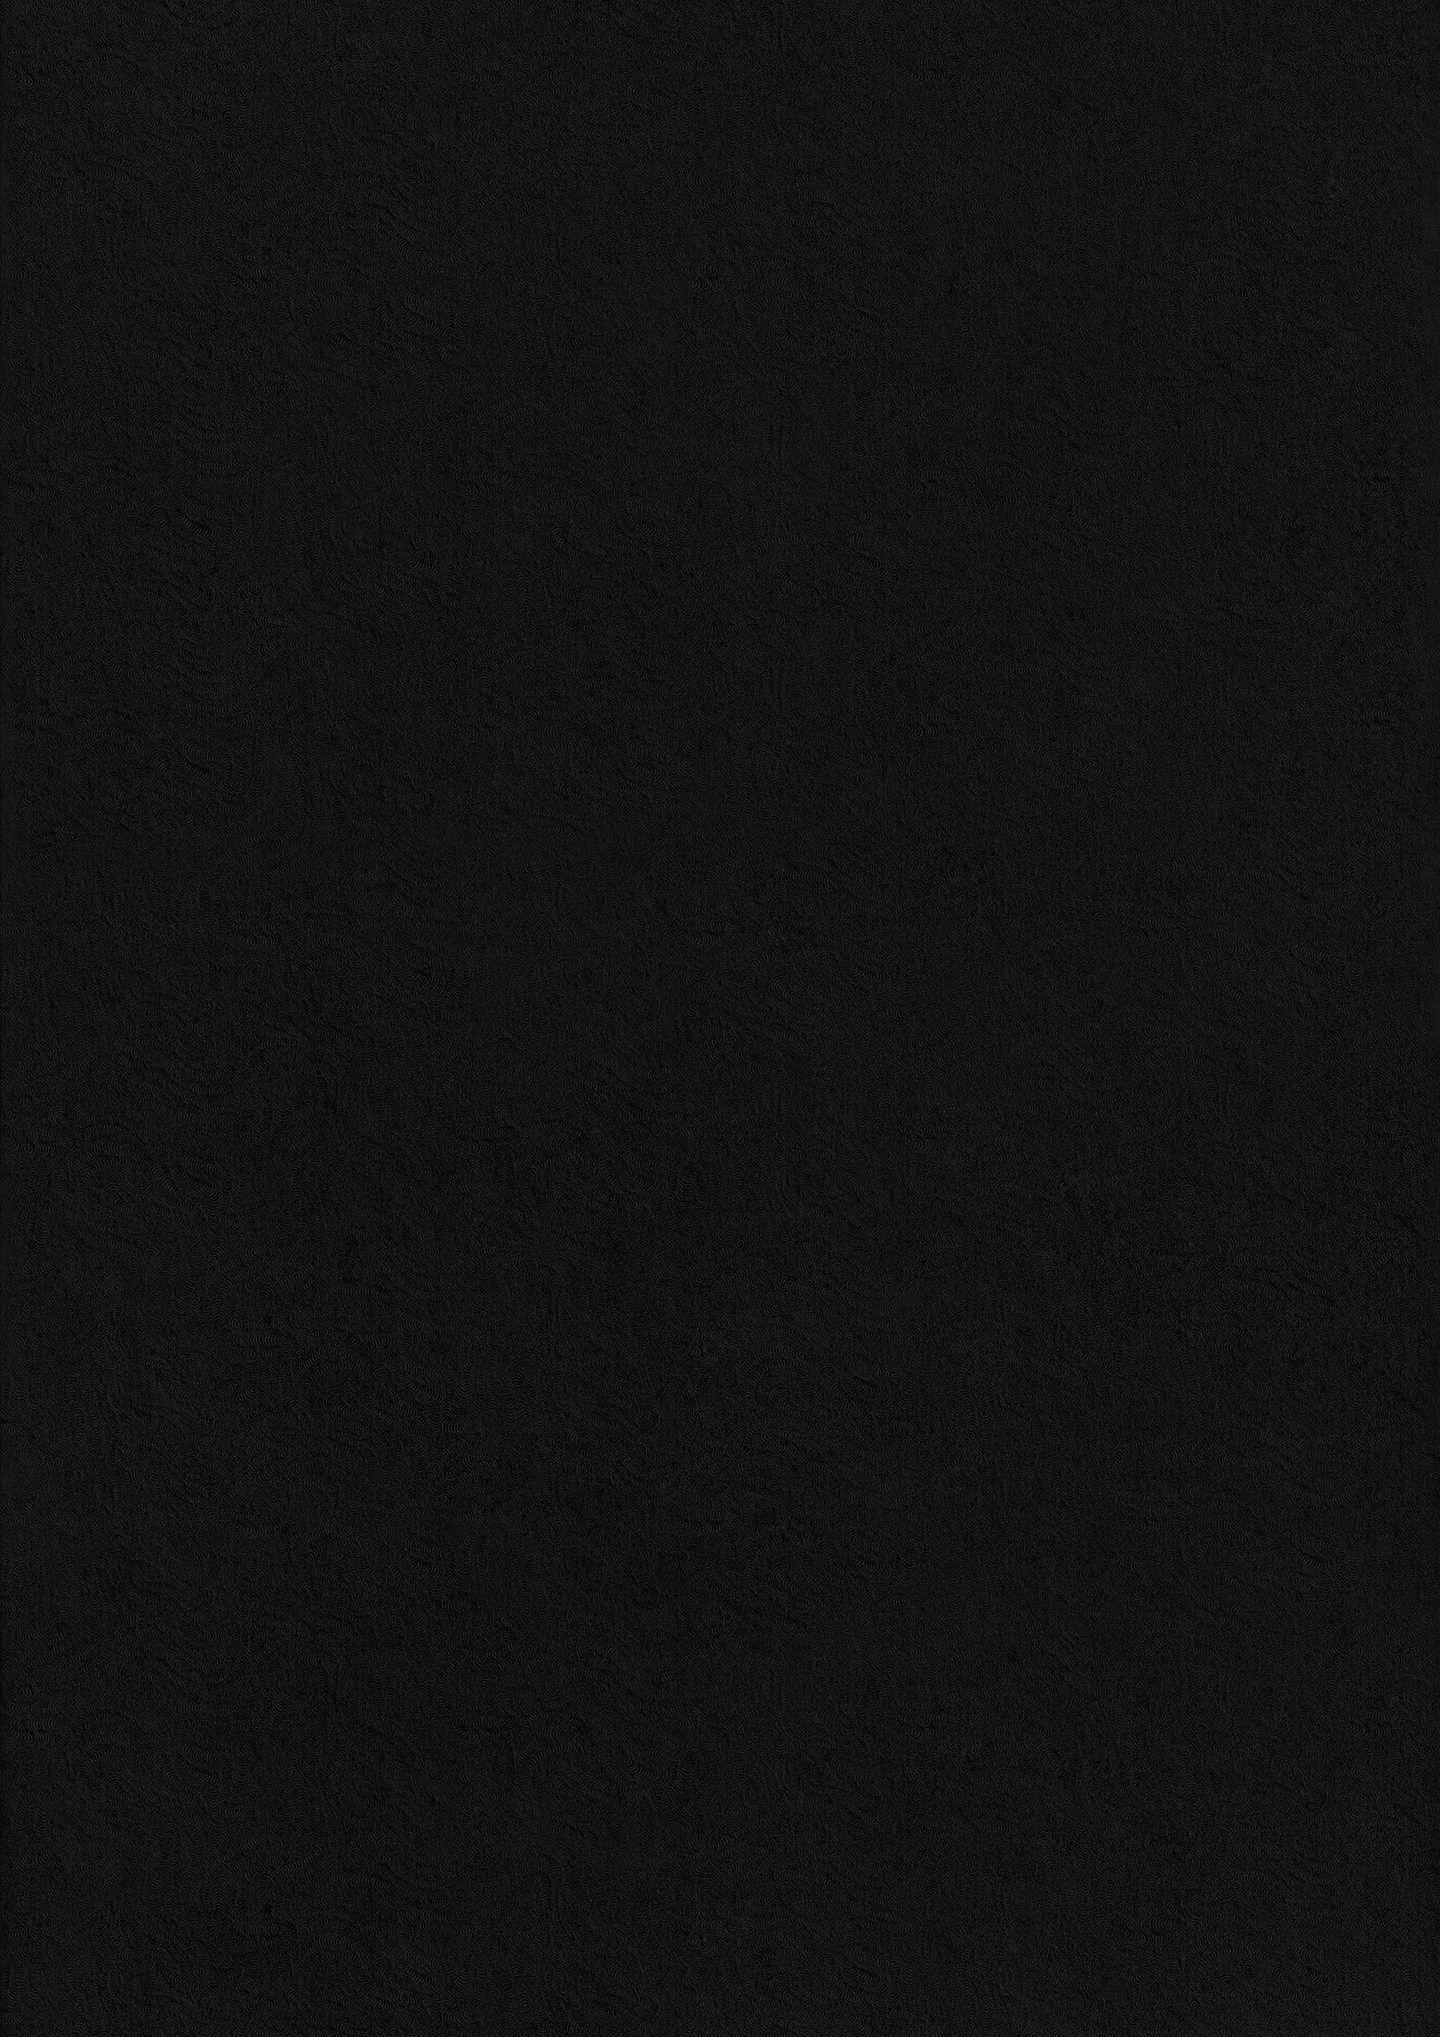 1440x2037 Họa tiết giấy đen - Textures.World